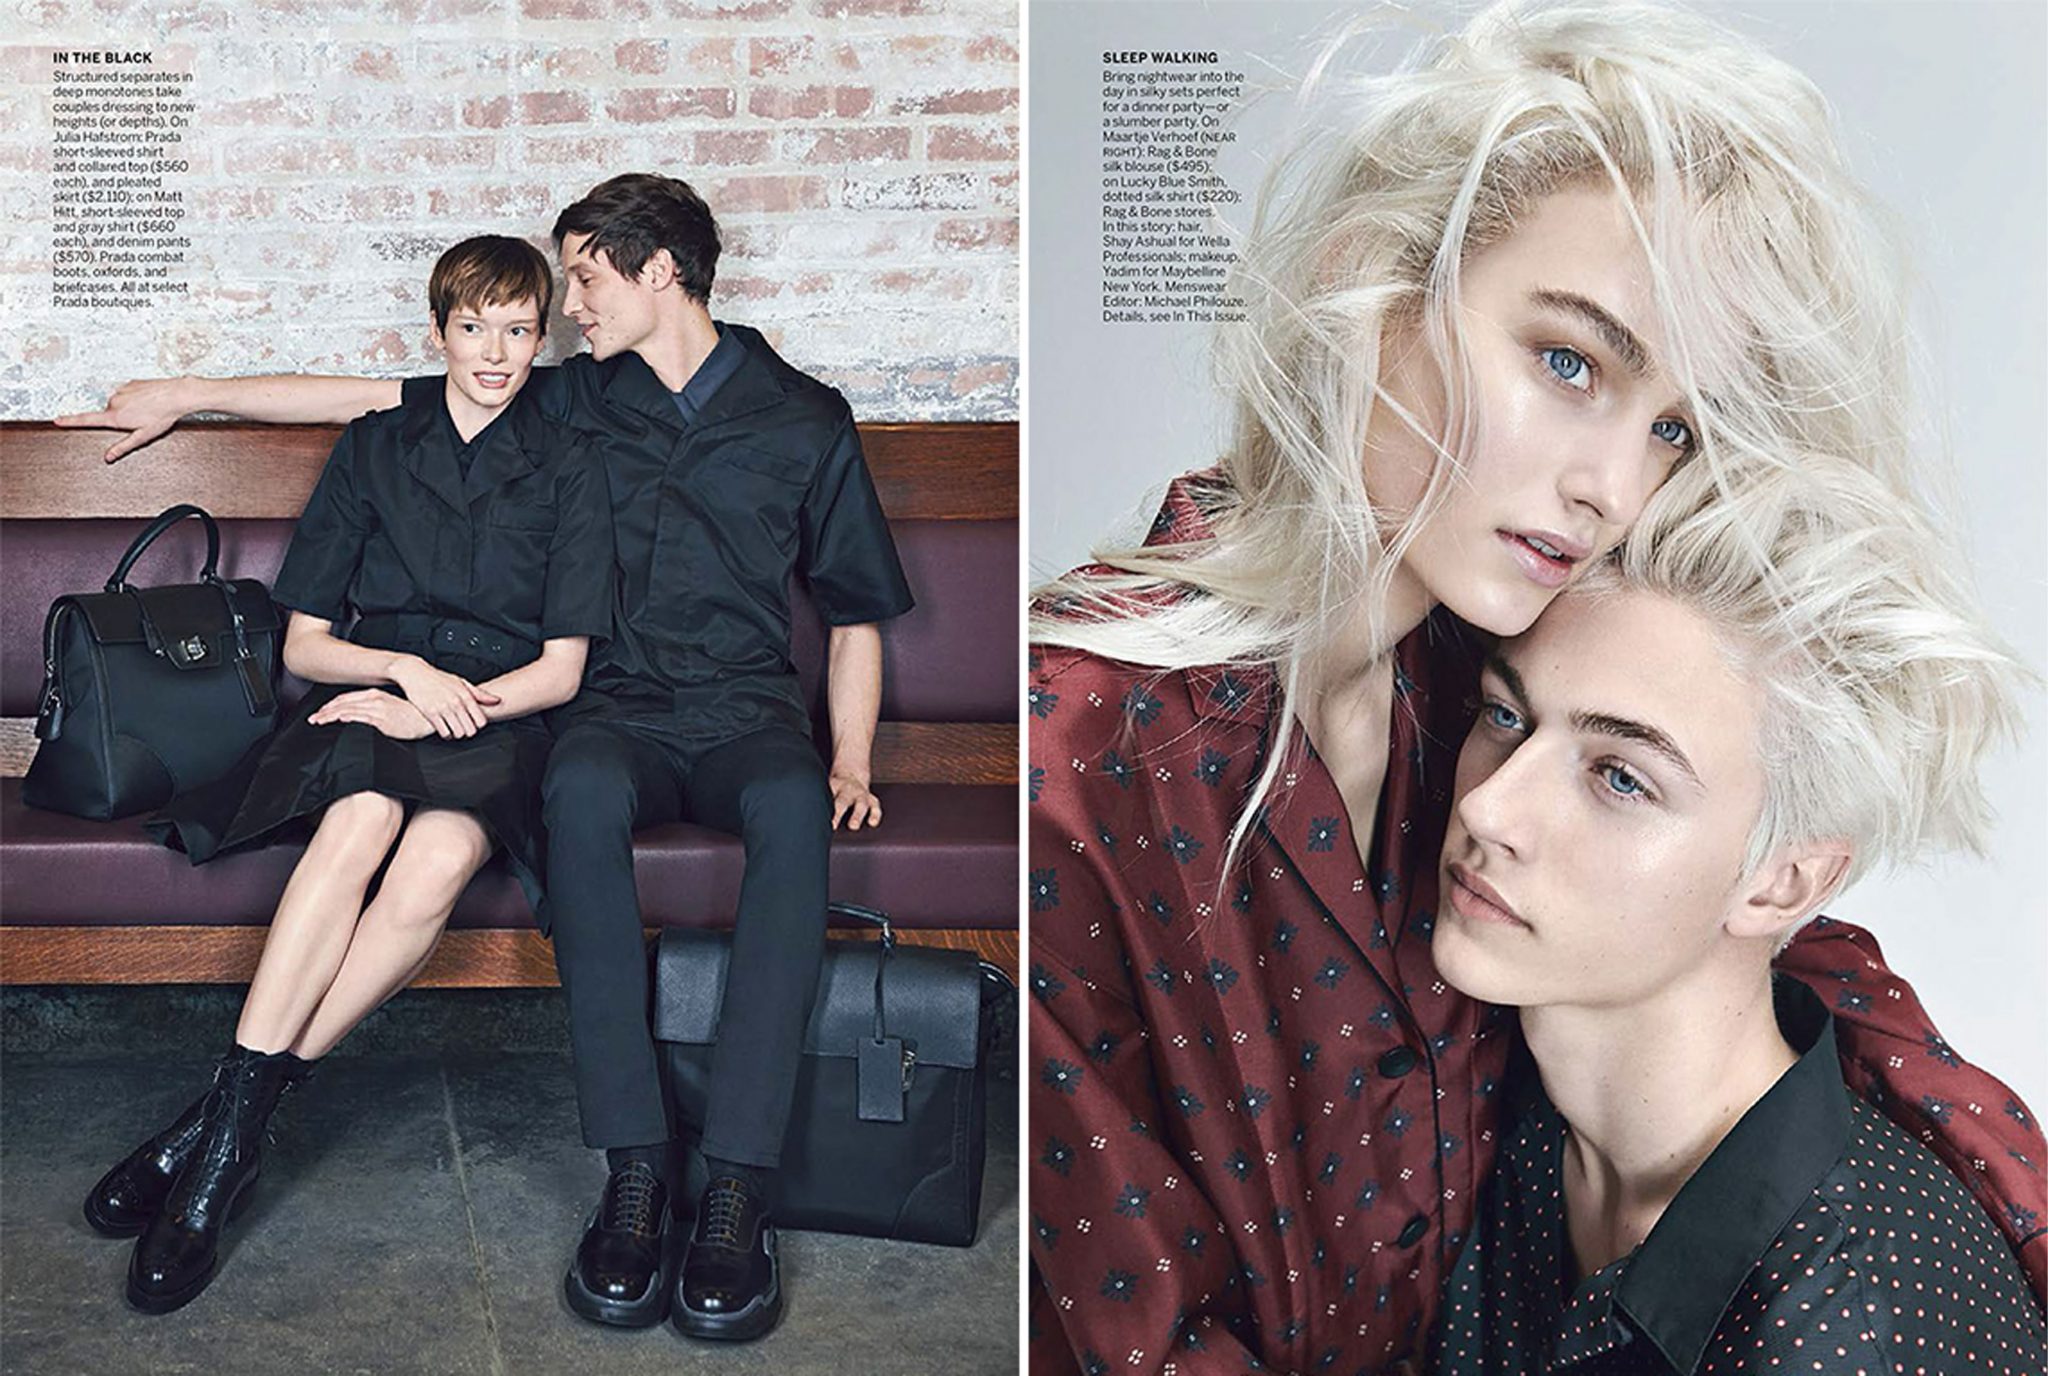 Michael Philouze | Vogue US: Blurred Lines | 4